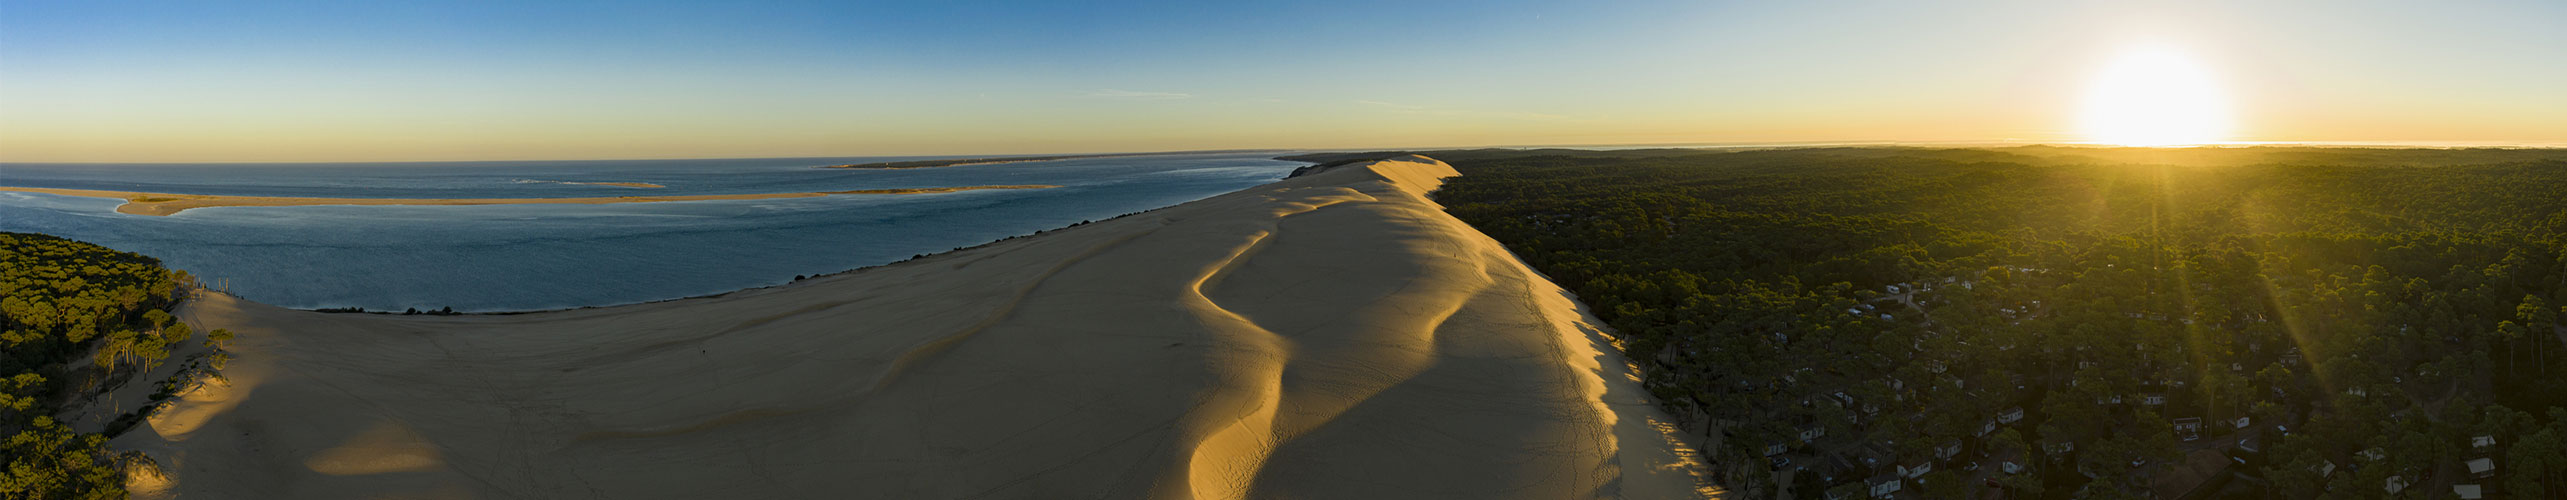 La dune de pilat au levé du jour